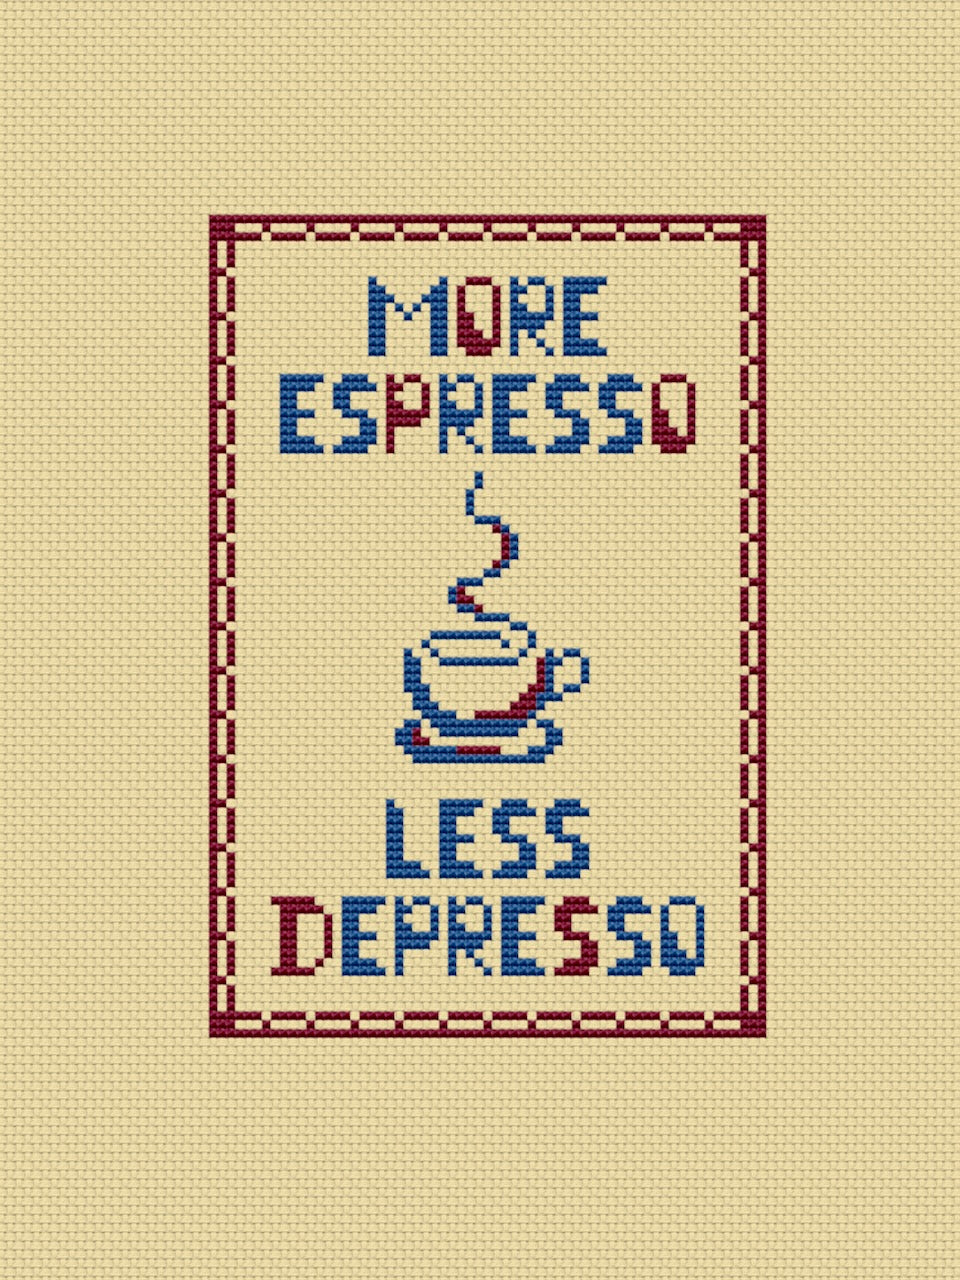 More espresso less depresso embroidery